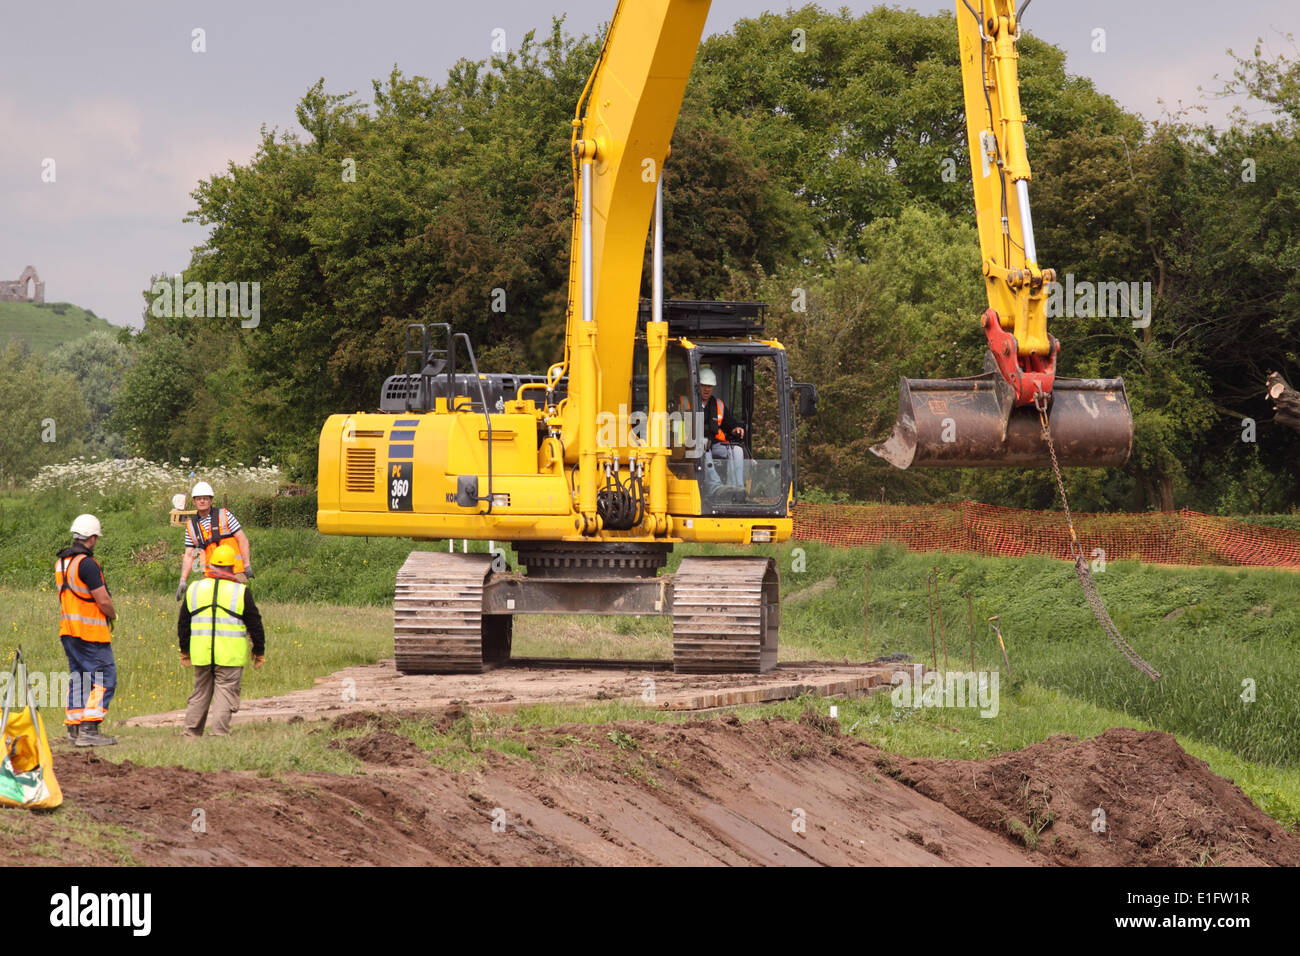 Tono di fiume, Athelney, Somerset, Regno Unito 3 Giugno 2014 - L'Agenzia per l'ambiente hanno appena iniziato a lavorare sulla seconda area di dragaggio del Somerset livelli, questa volta lungo il fiume di tono. Foto Stock